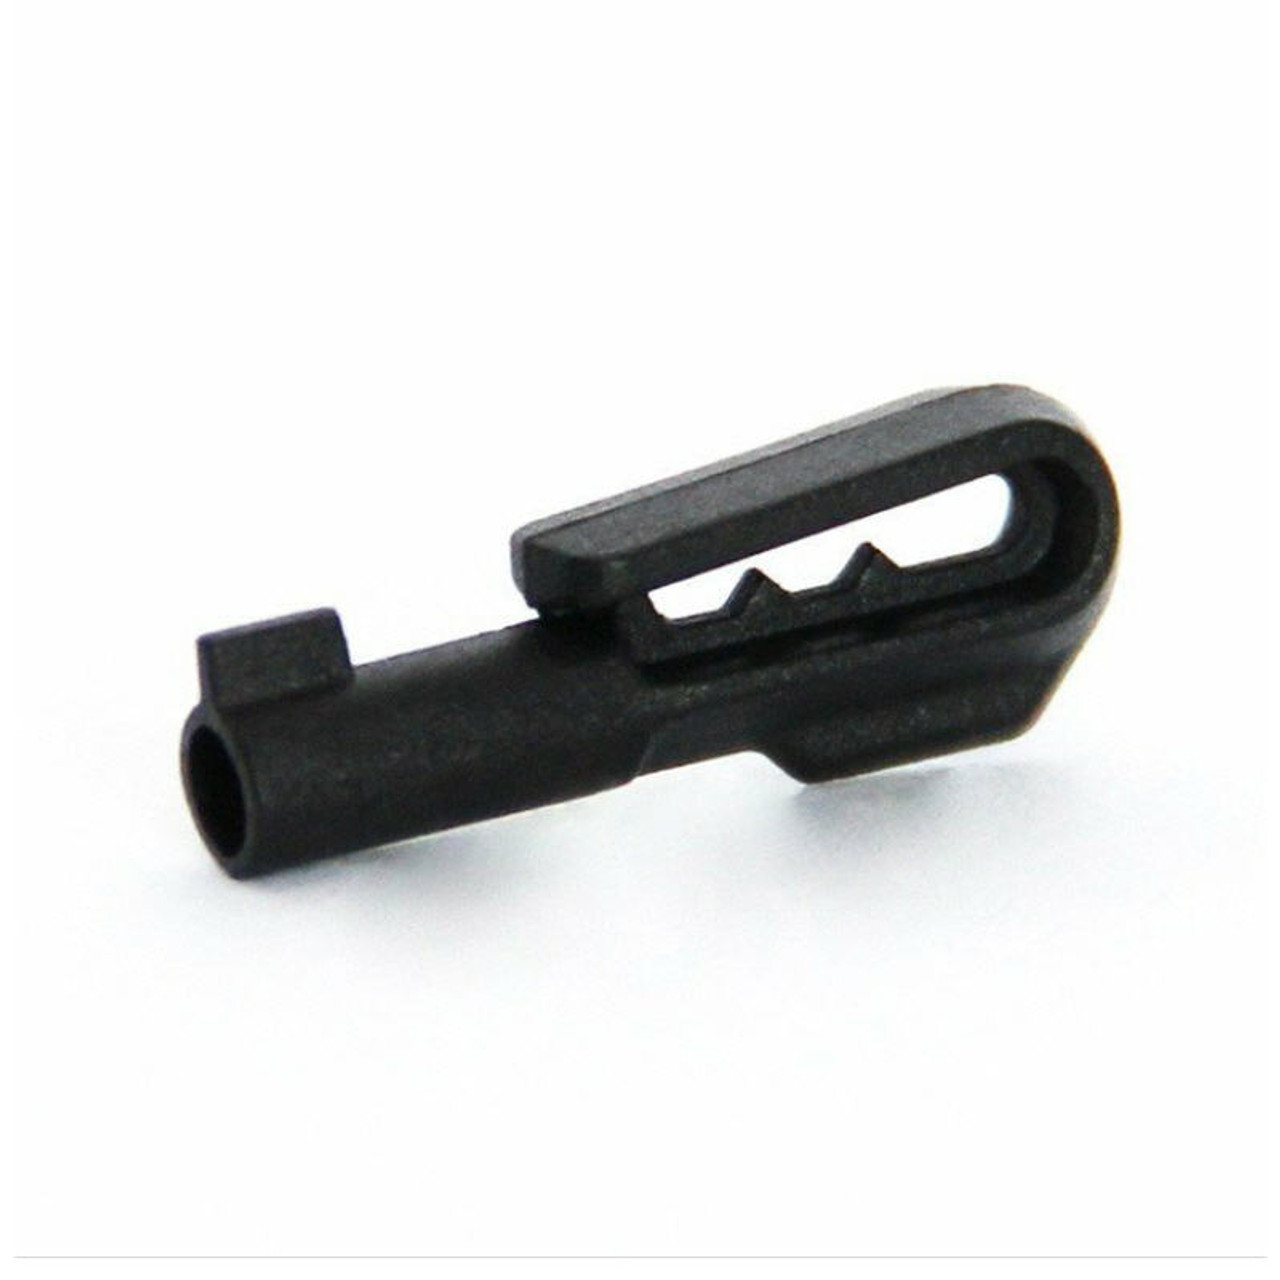 Micro Clip Non Metallic Escape Handcuff Key - J&L Self Defense Products